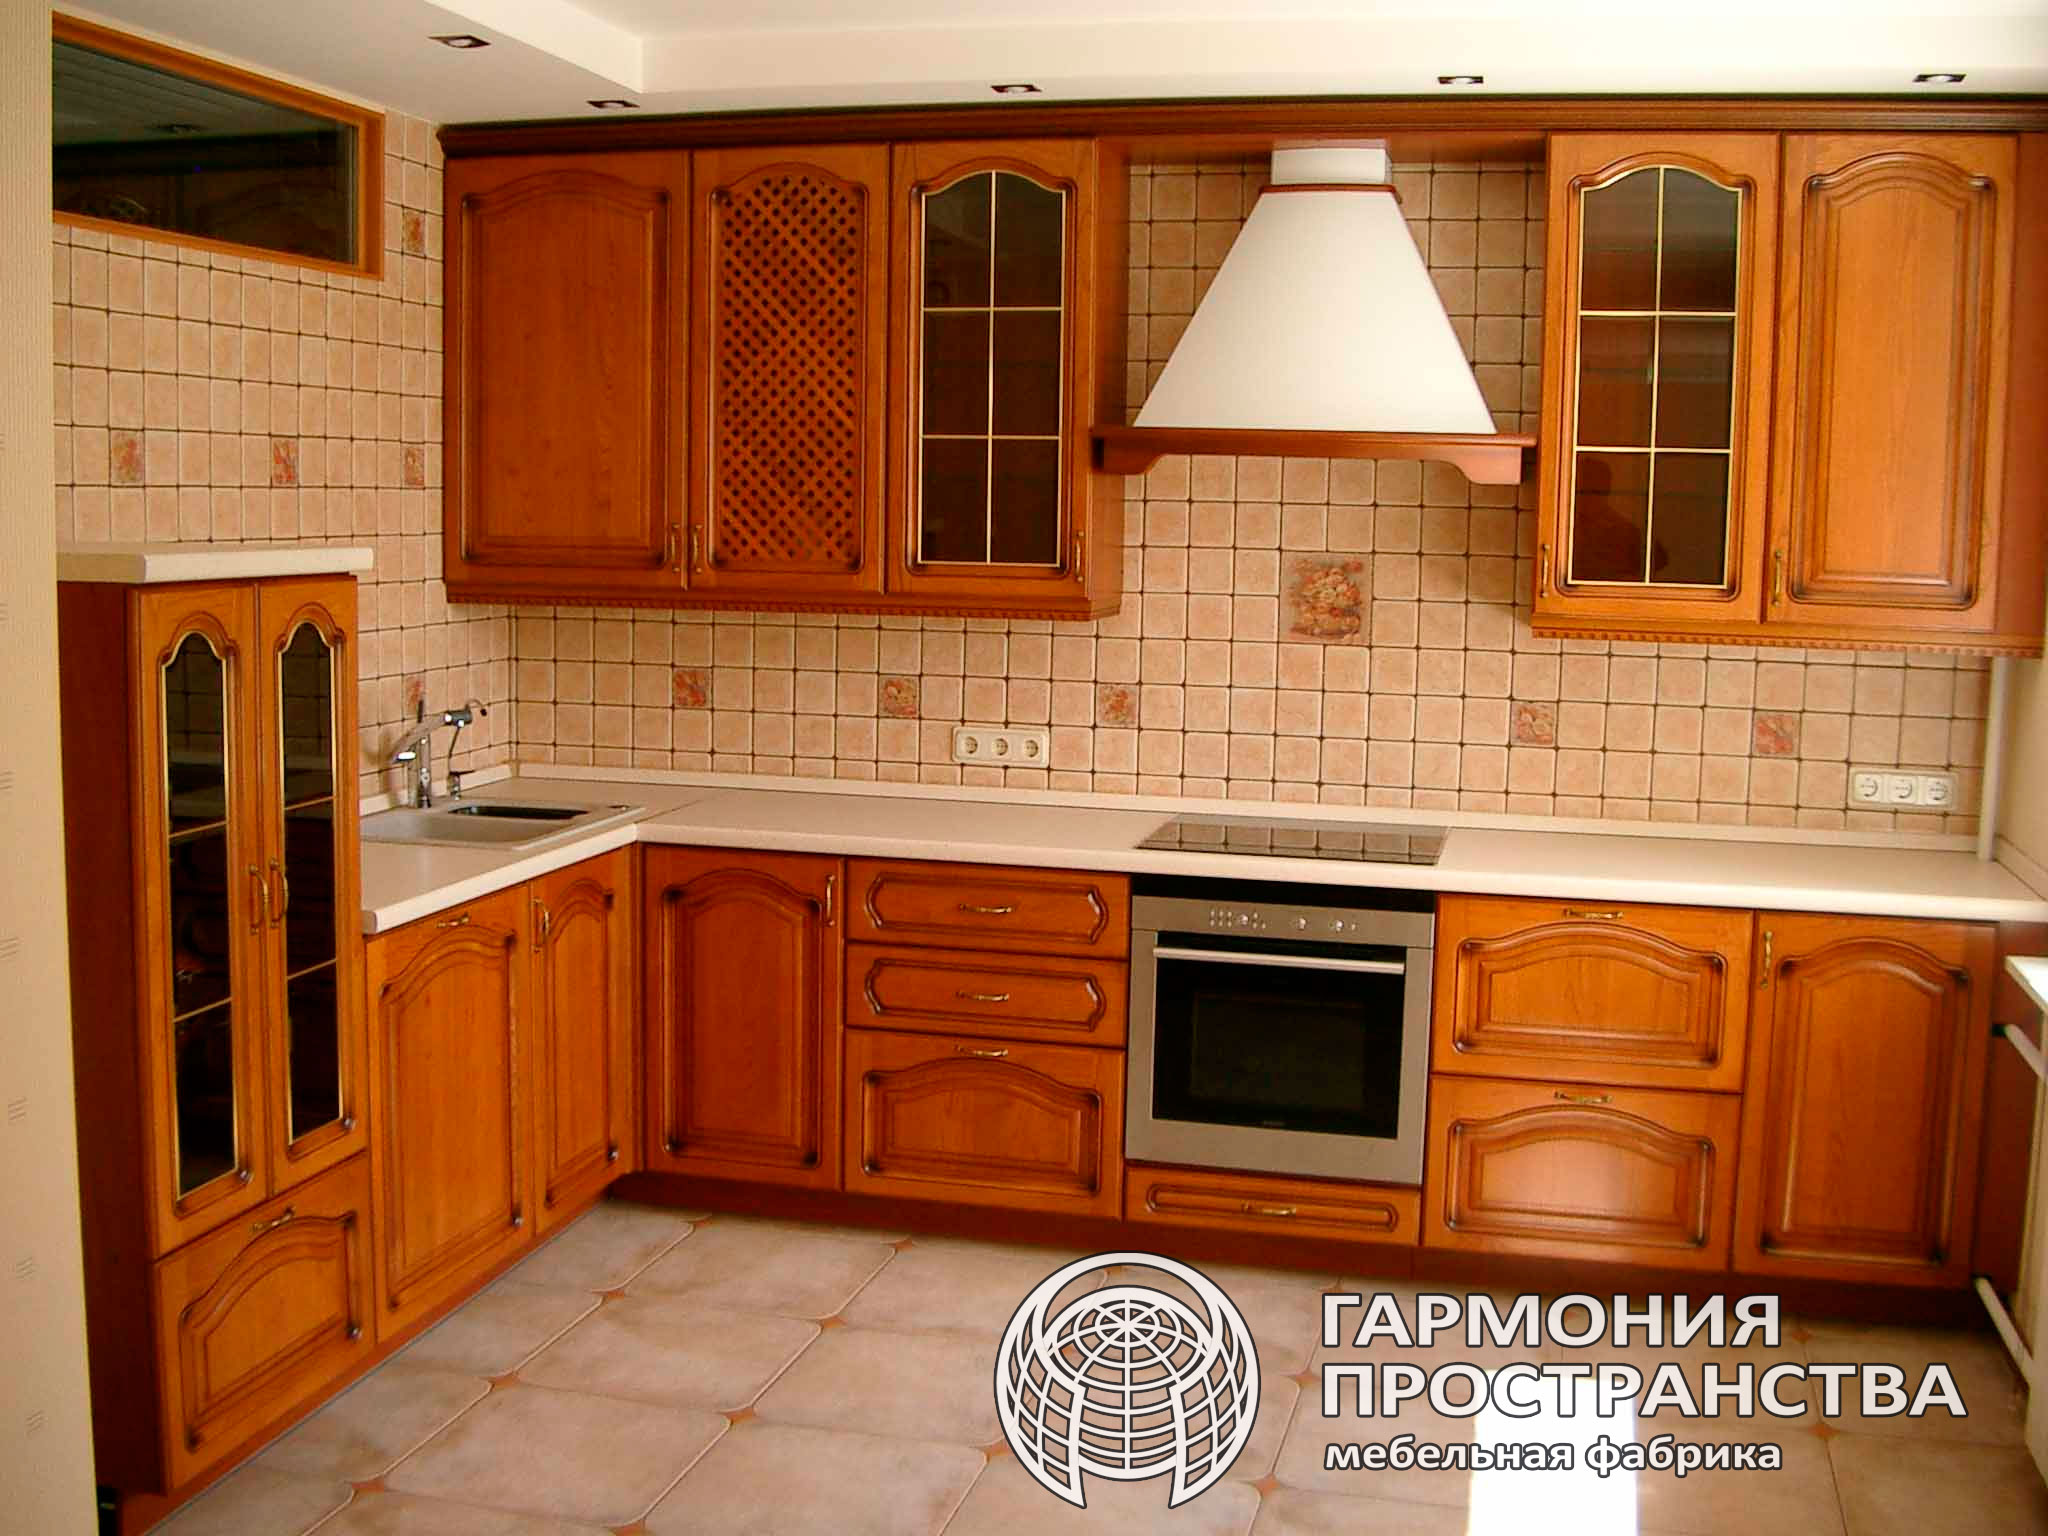 Кухни хорошие деревянные. Деревянный кухонный гарнитур. Кухня из дерева. Кухонный гарнитур из дерева. Фасад кухни дерево.